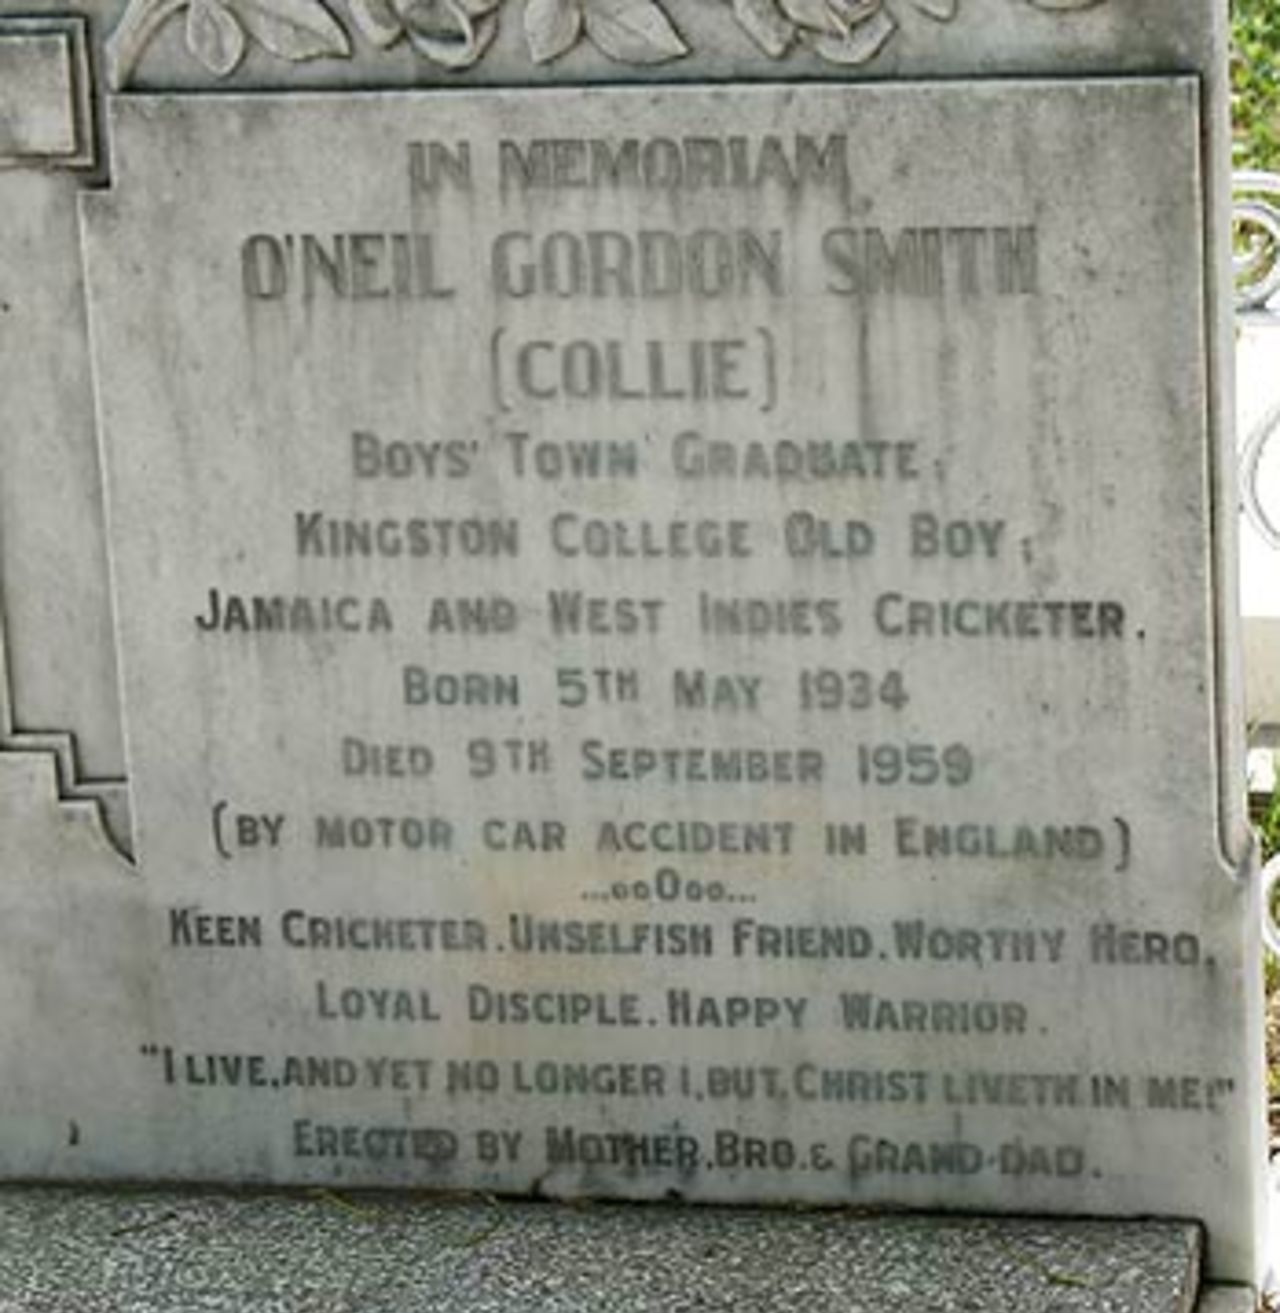 O'Neill Gordon Smith's tombstone, Kingston